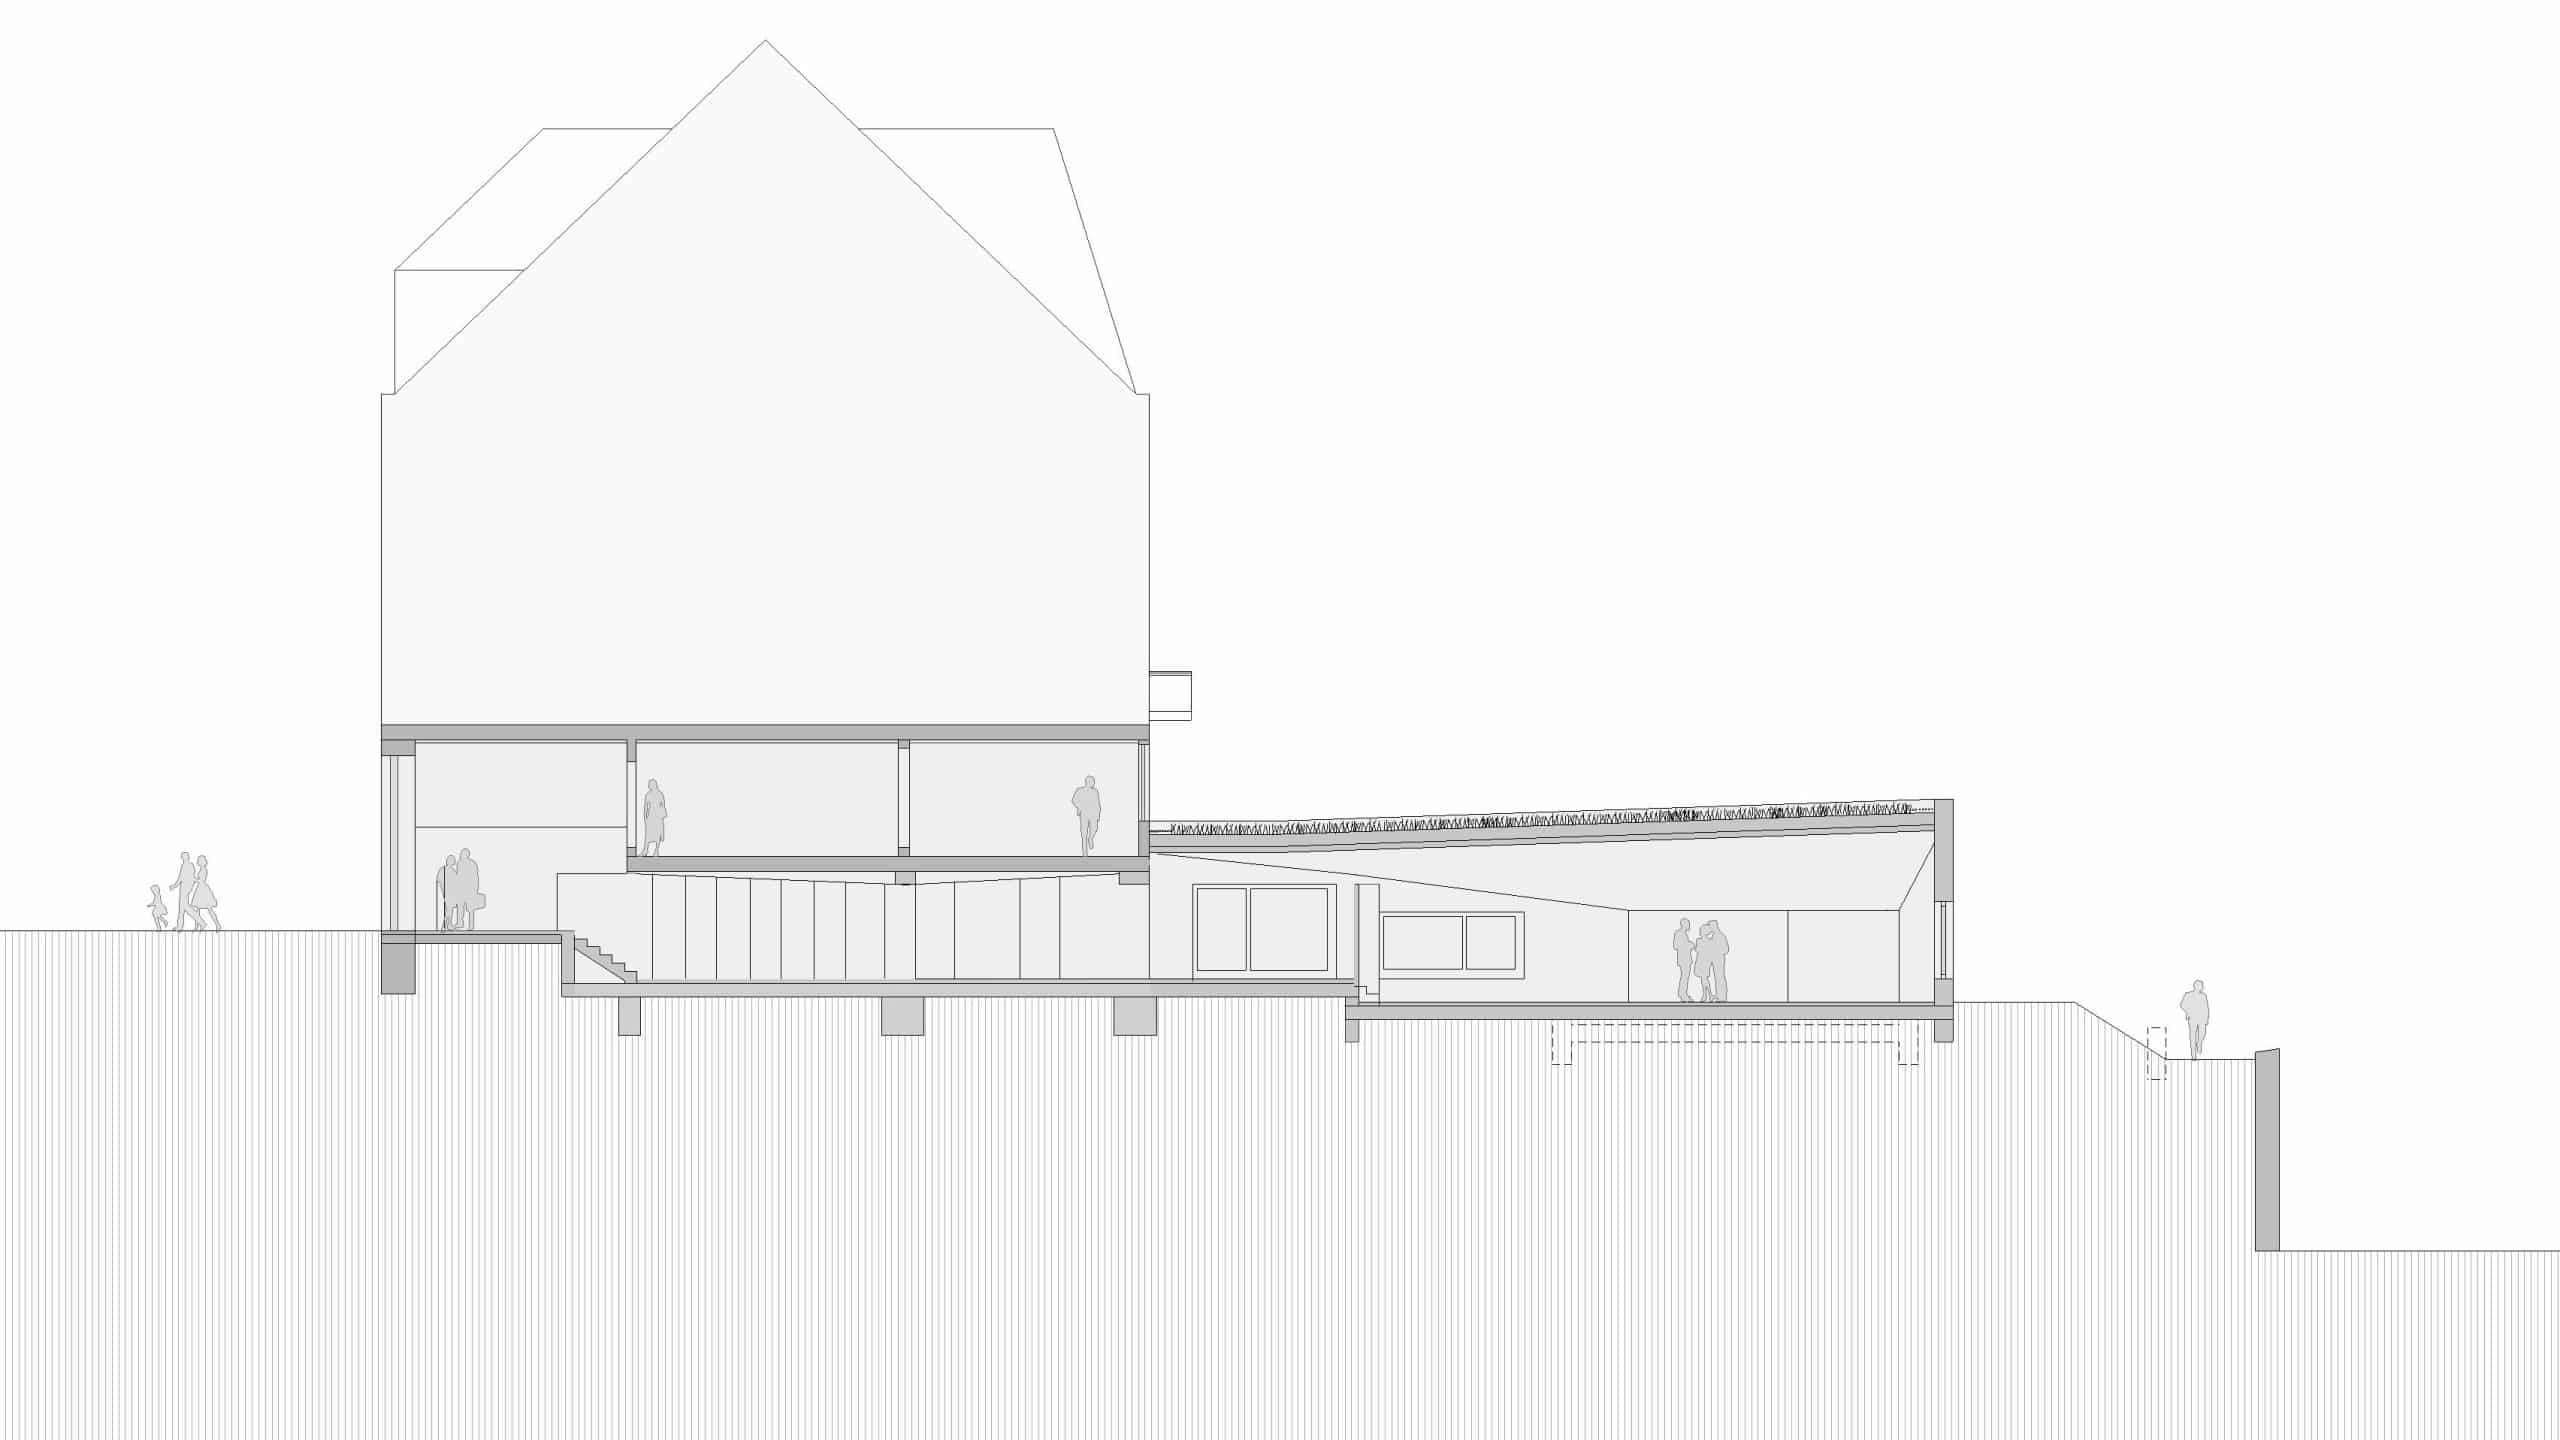 Querschnitt des Wohn-und Geschäftshauses von Dannien Roller Architekten + Partner in Tübingen.